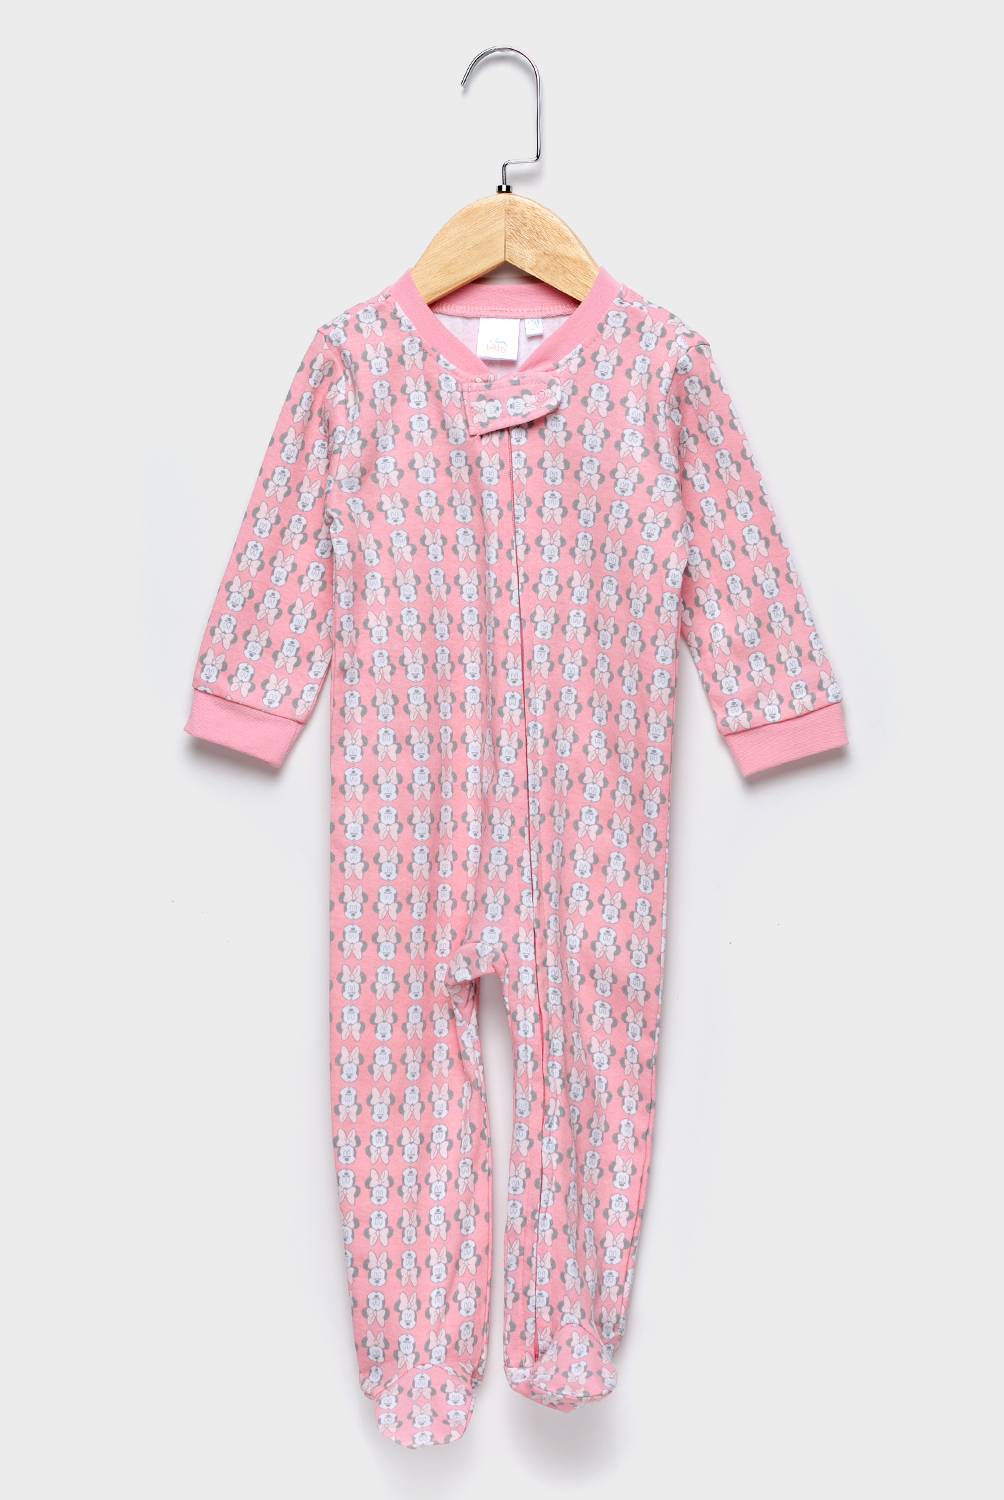 MINNIE - Pijama Minnie Algodón Bebé Niña